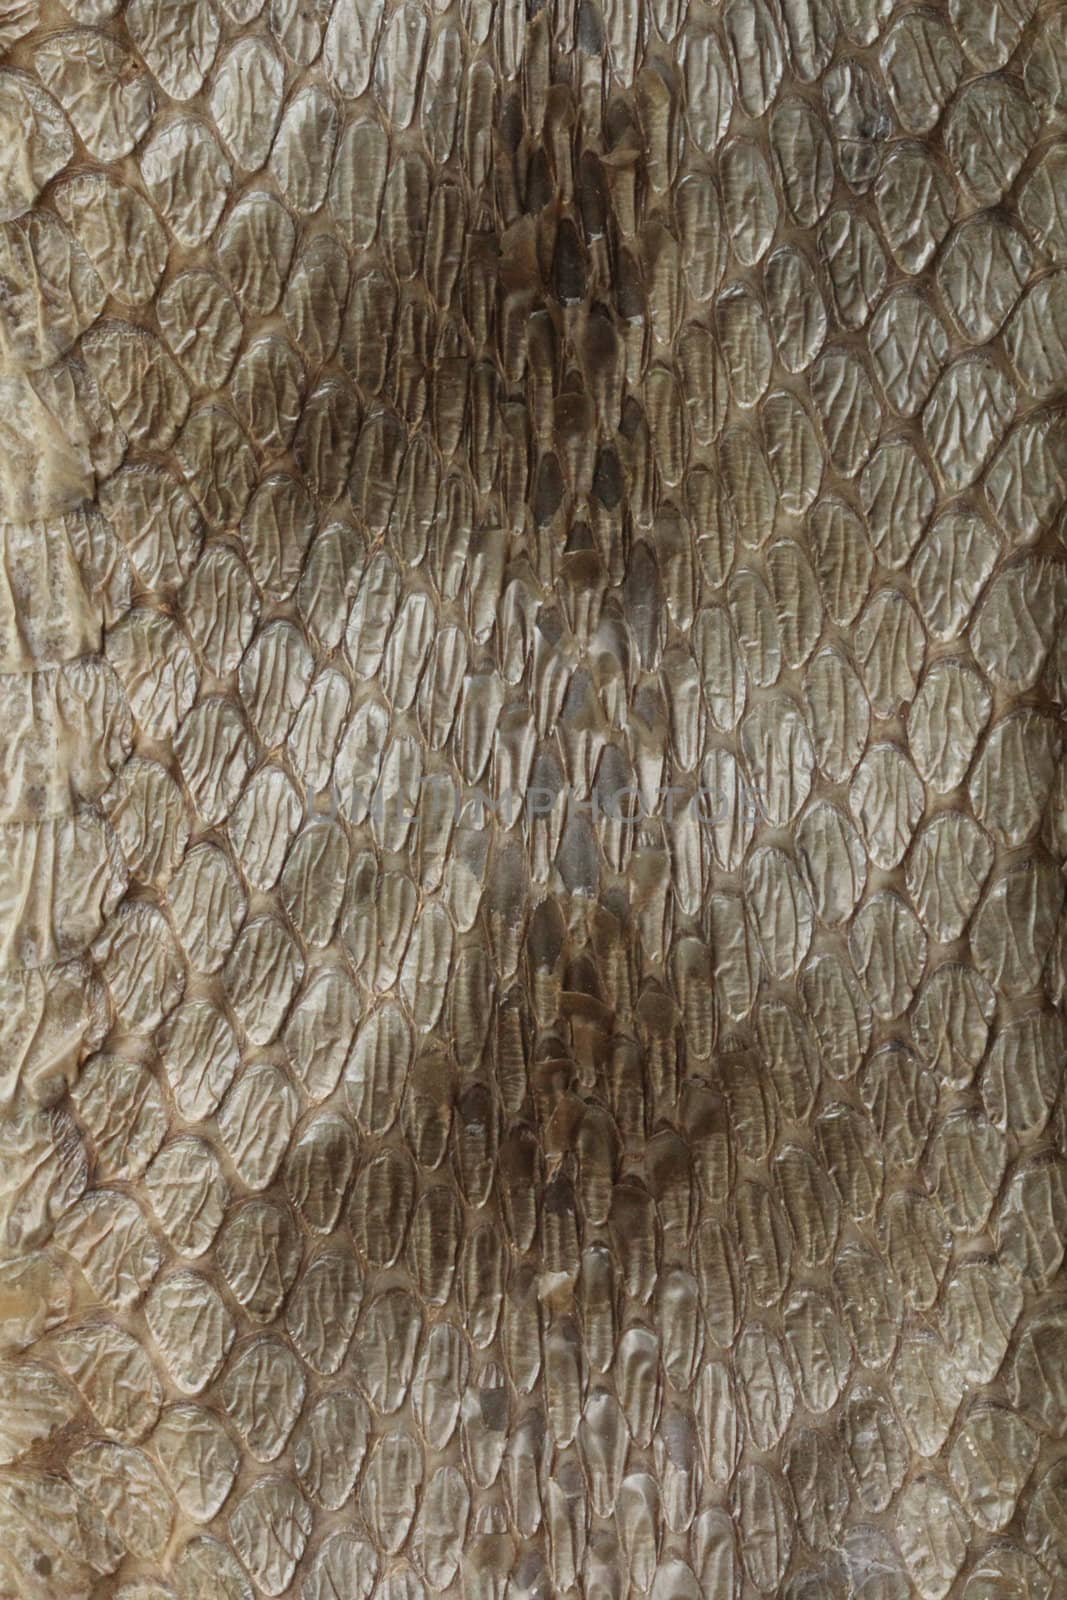 Dry python snake skin background